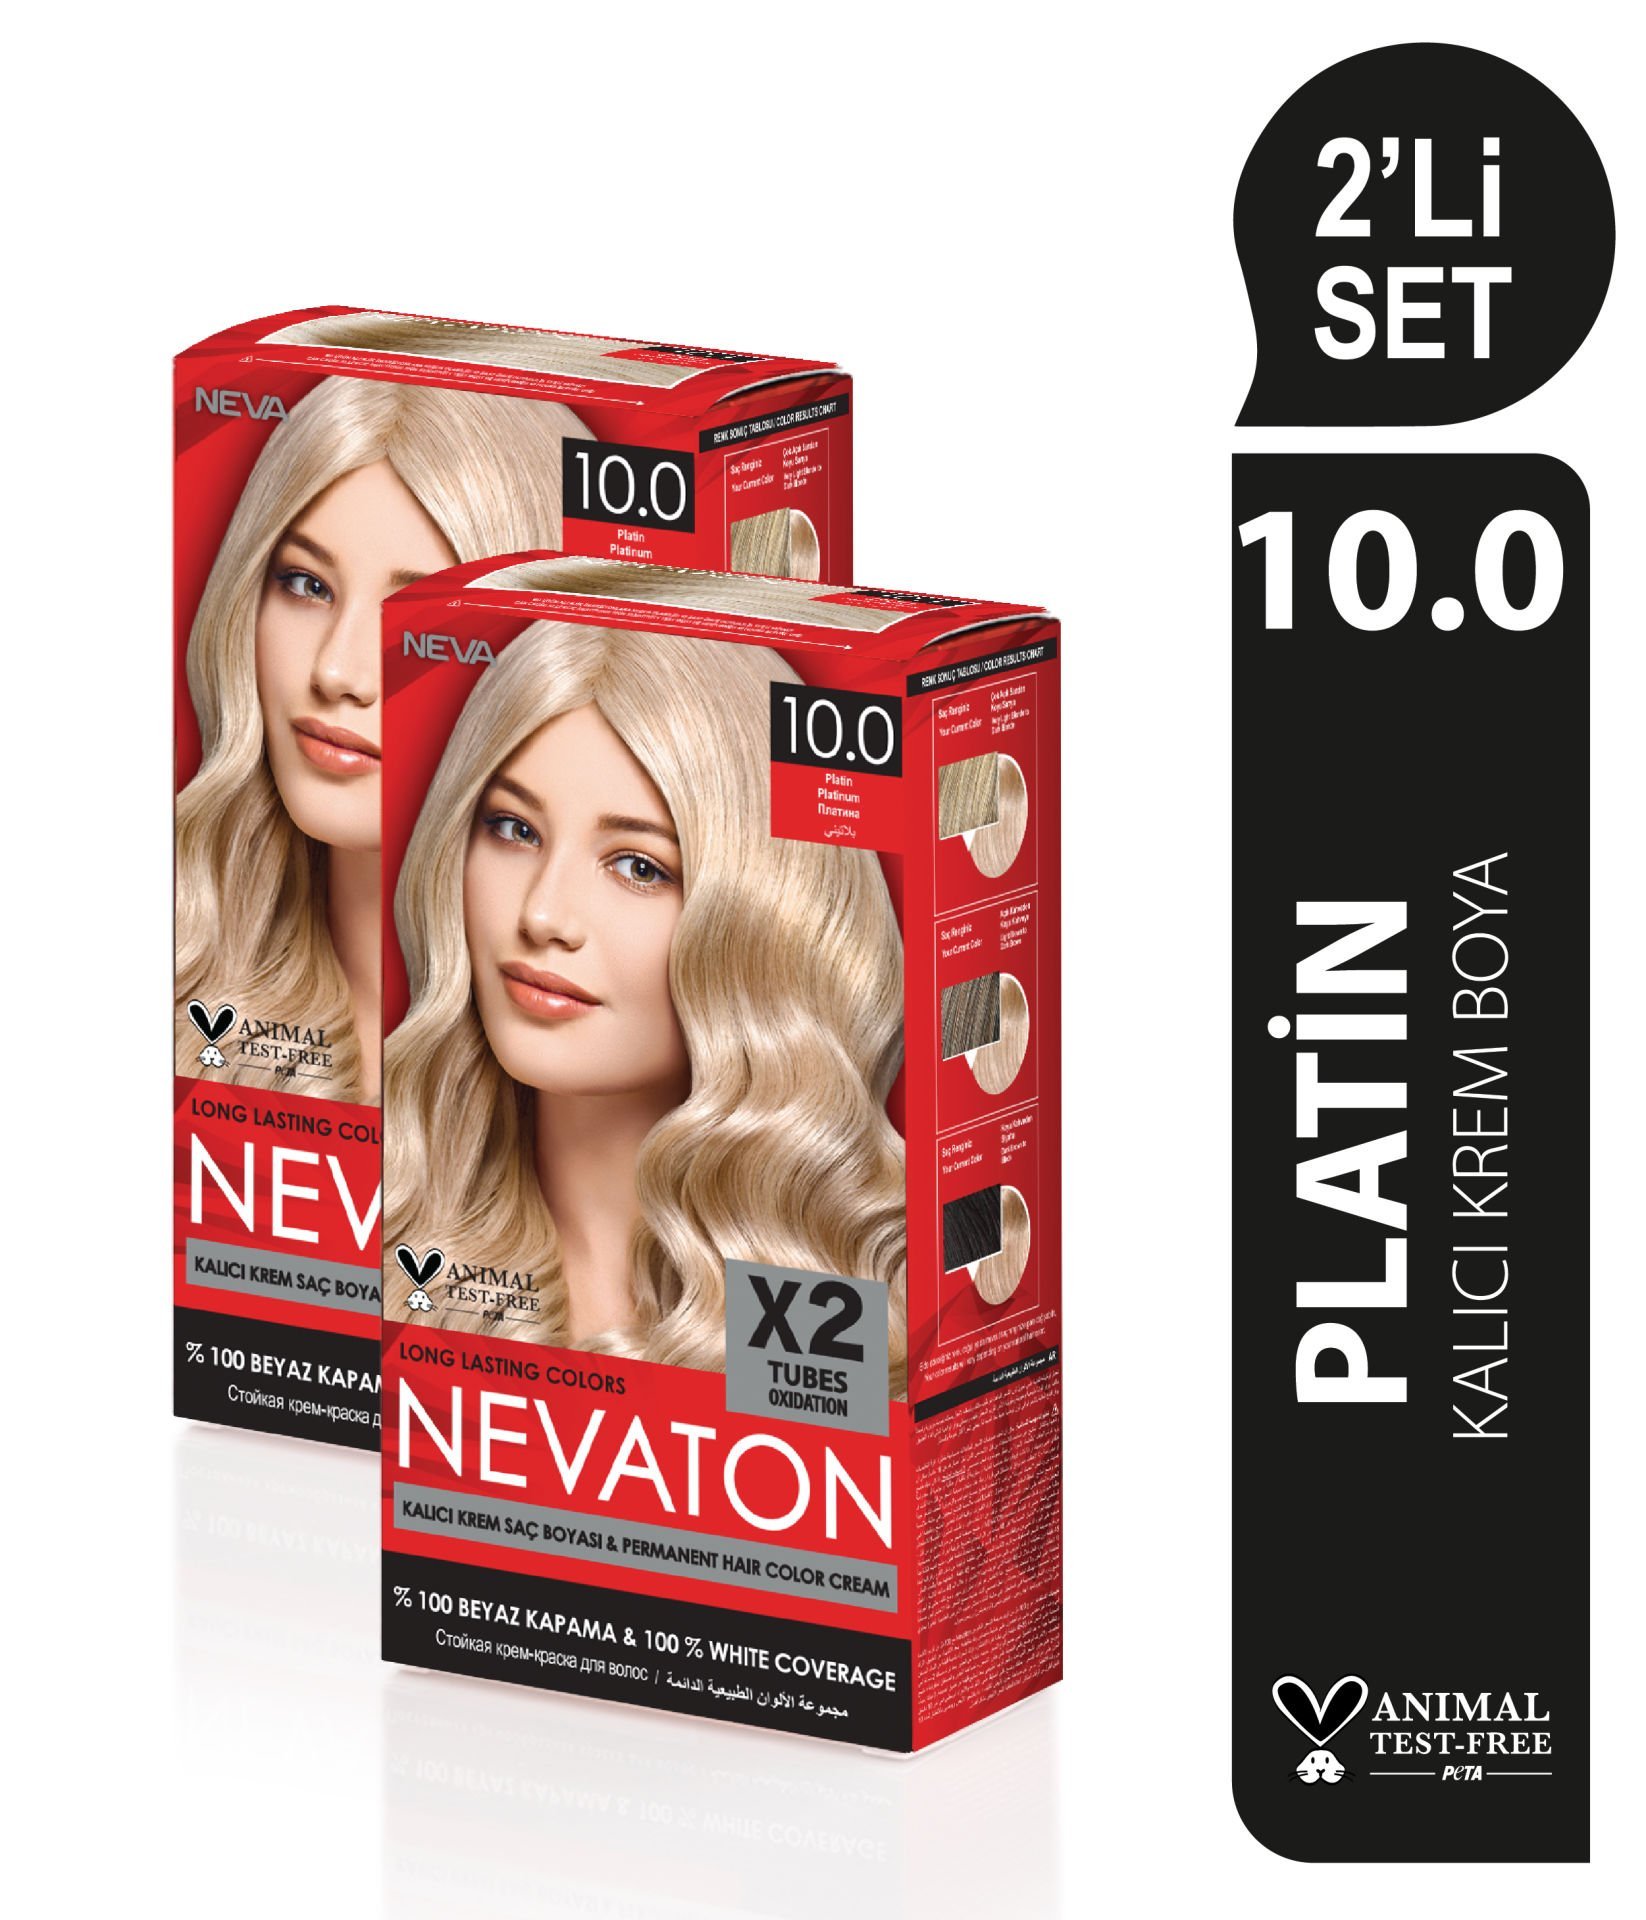 NEVATON 2 x 2'Lİ SET 10.0 PLATİN Kalıcı Krem Saç Boyası Seti (4 boya + 4 oksidan)